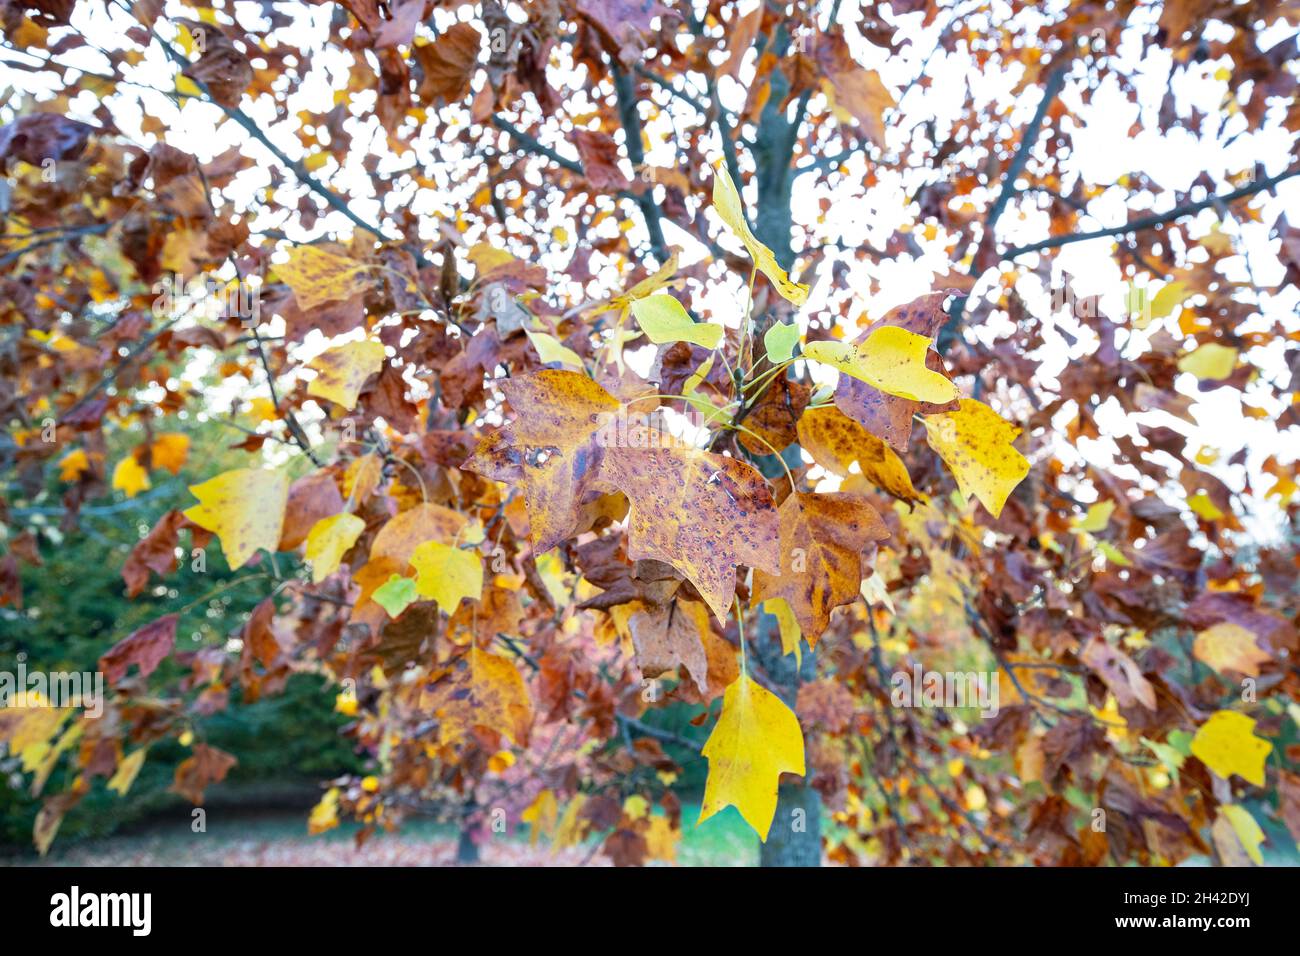 Fin octobre dans la ville métropolitaine de Venise, où les arbres présentent un feuillage coloré étonnant Banque D'Images